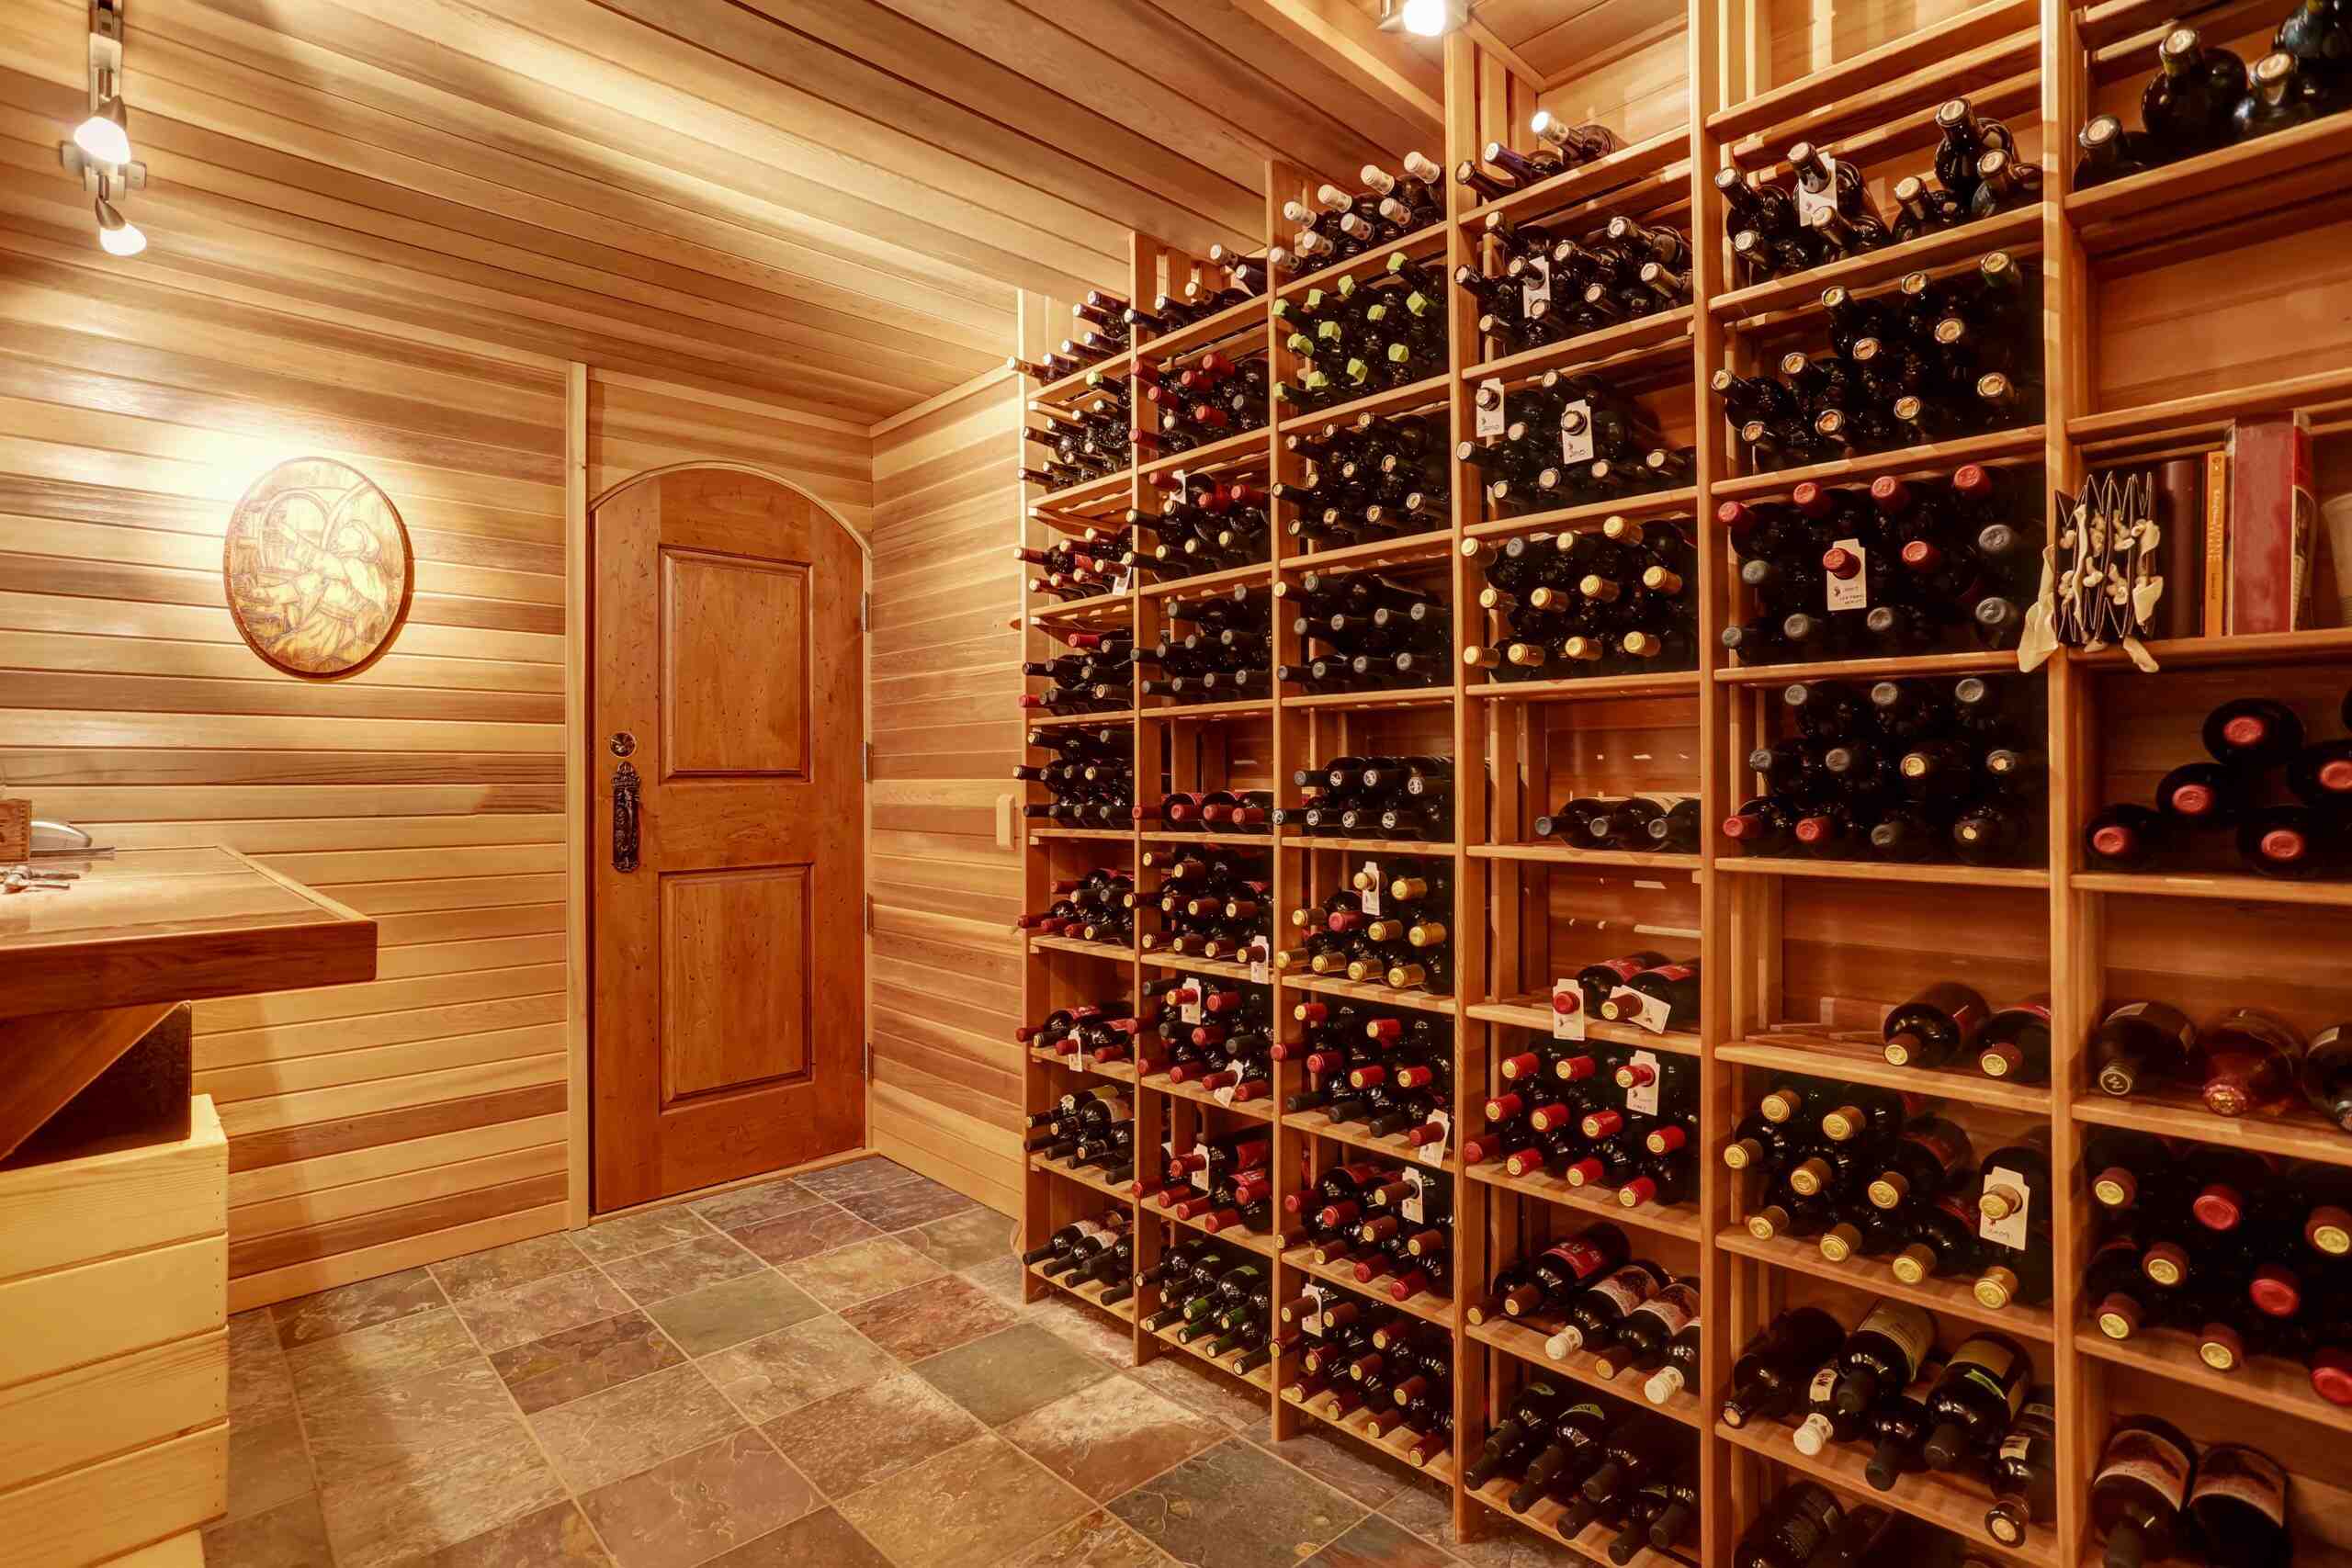 Comment régler la température d'une cave à vin ?